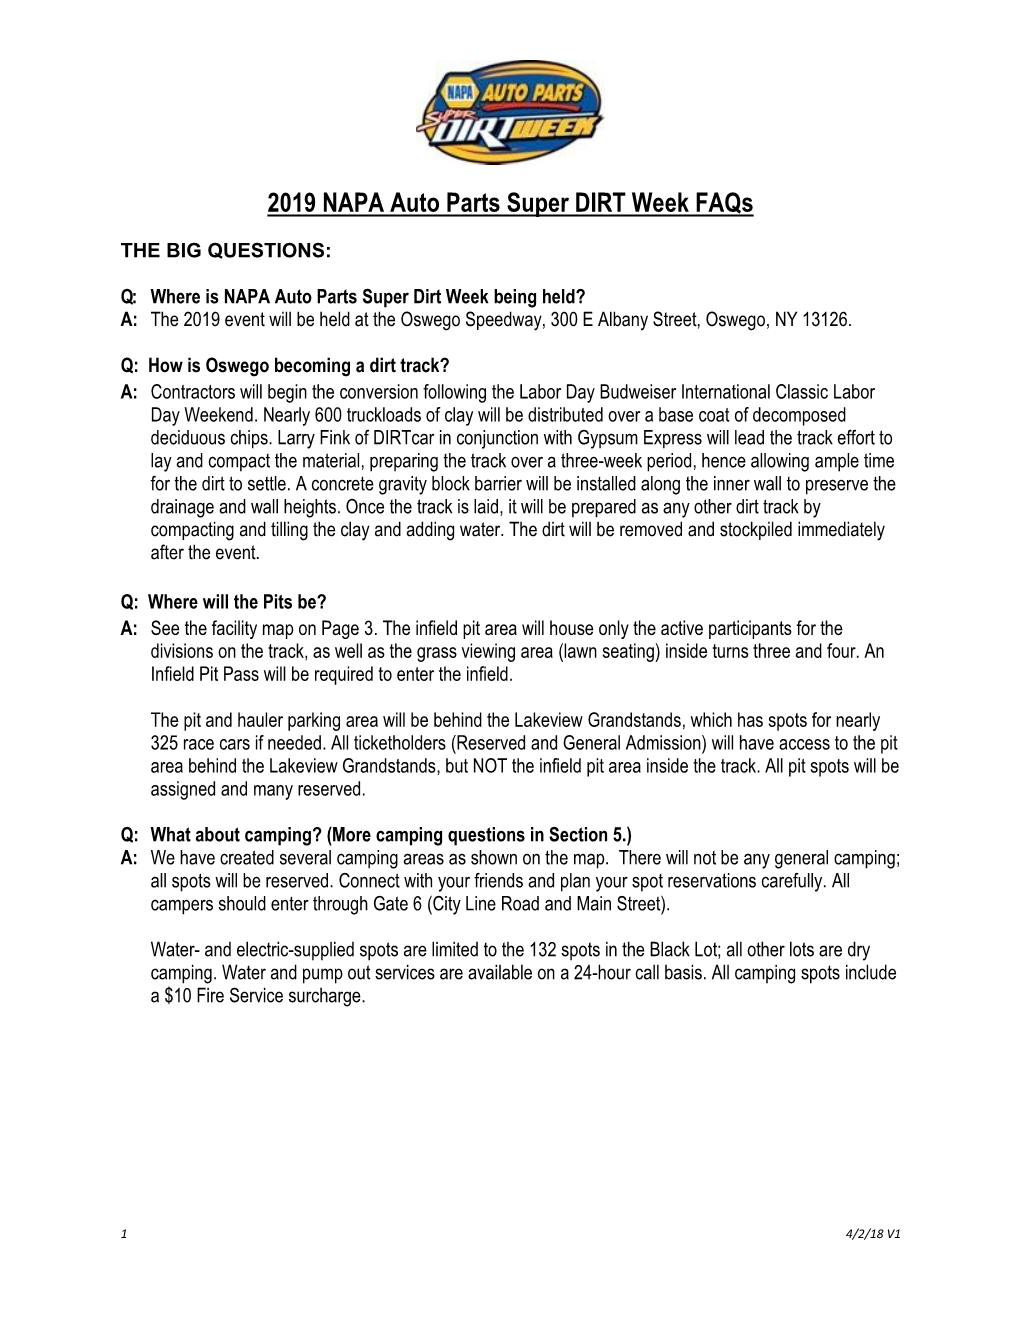 2019 NAPA Auto Parts Super DIRT Week Faqs